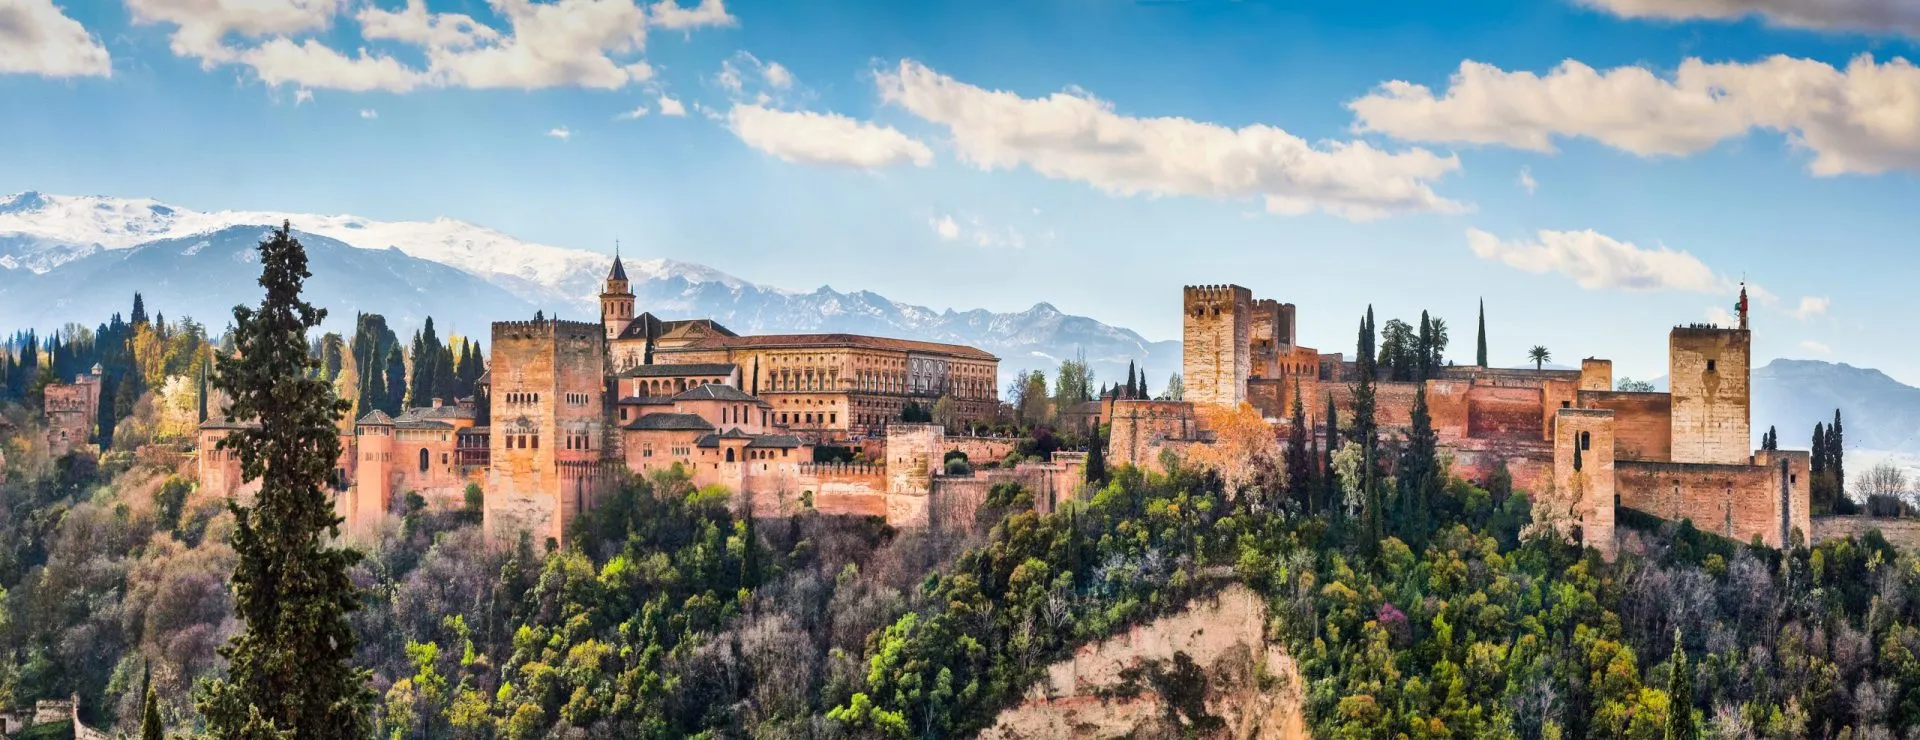 La famosa Alhambra a Granada, Andalusia, Spagna